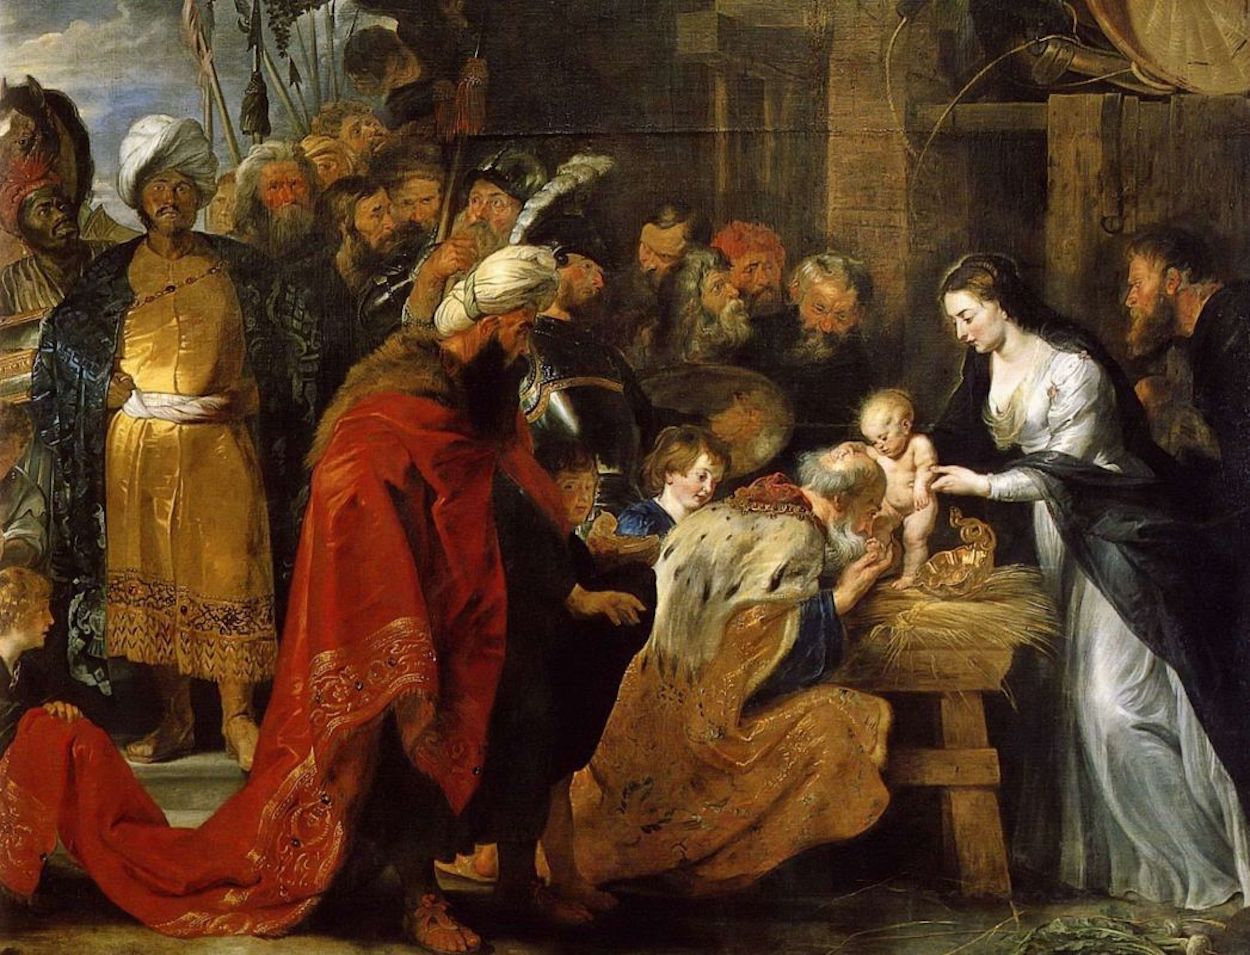 Adorazione dei magi by Peter Paul Rubens - 1616-1617 - 251 × 338 cm 